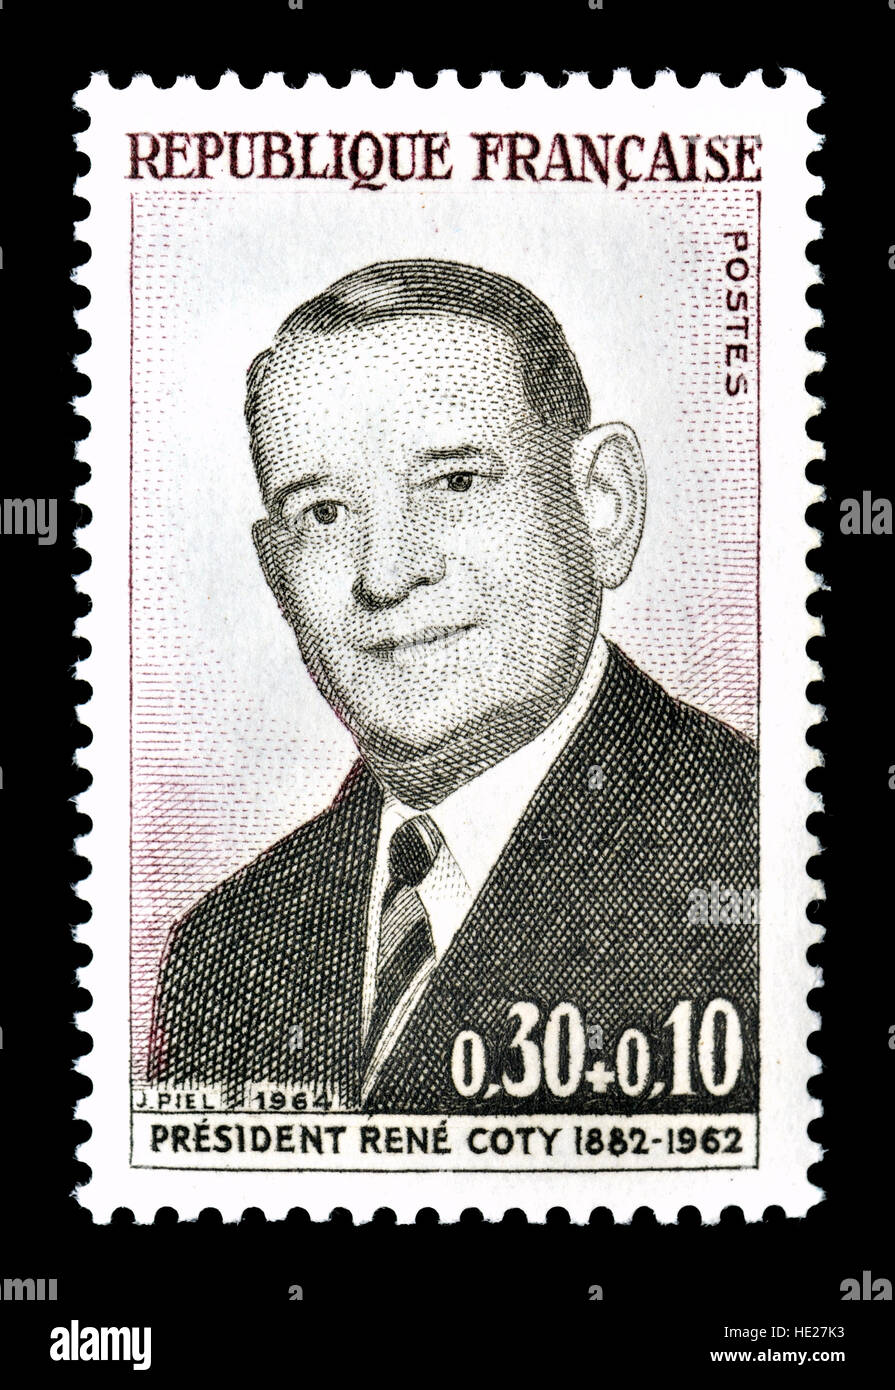 Timbre-poste français (1964) : René Jules Gustave Coty (1882 - 1962)  Président de la France de 1954 à 1959. Deuxième et dernier président de la  quatrième Photo Stock - Alamy